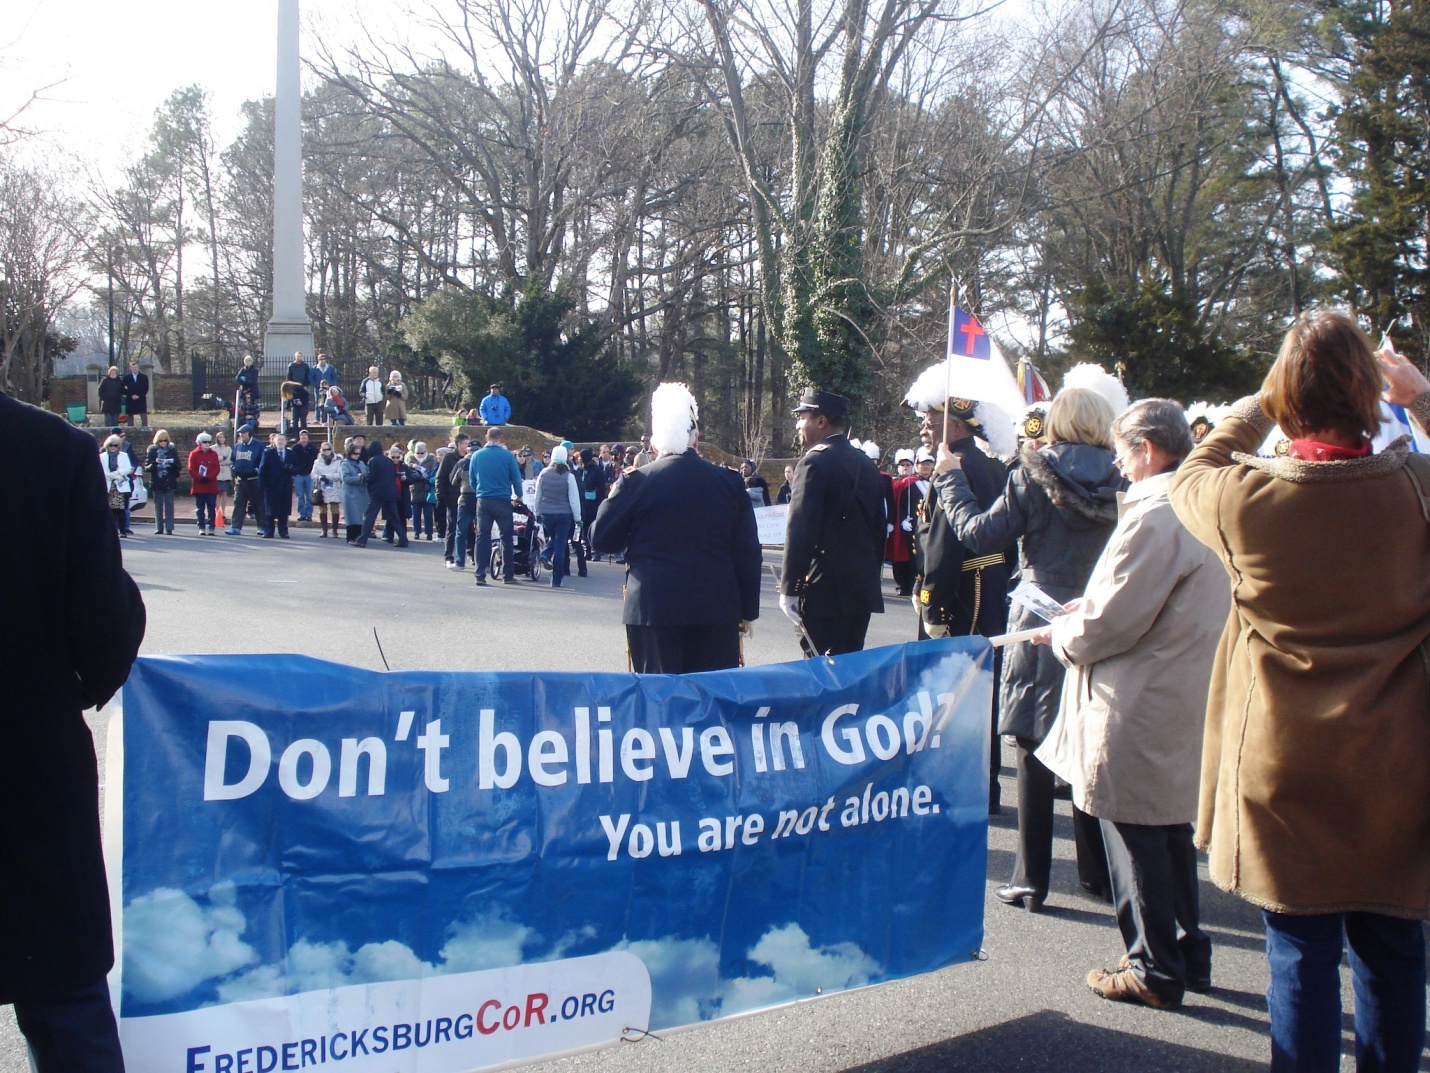 The Fredericksburg Coalition of Reason participates in a religious liberty parade in Fredericksburg, VA.